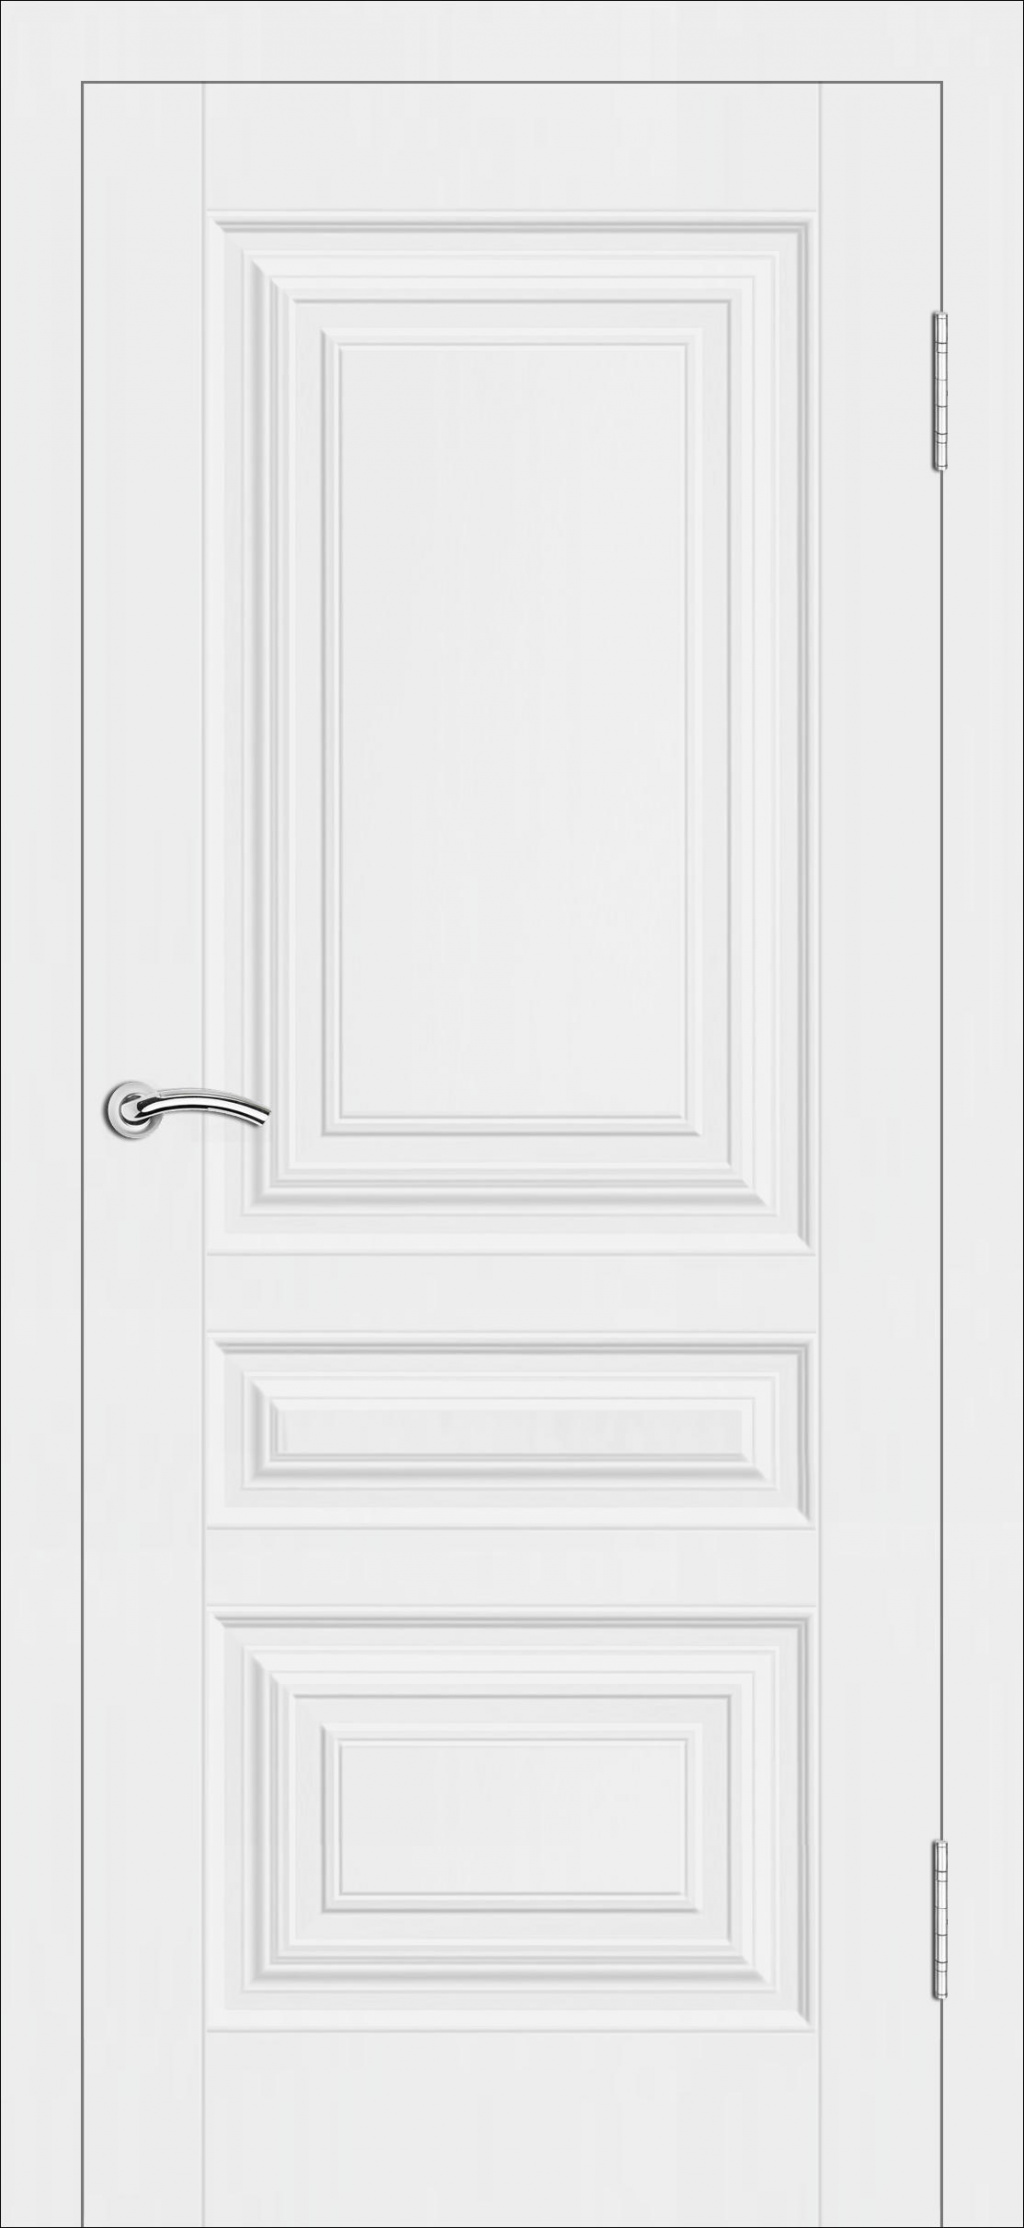 Cordondoor Межкомнатная дверь Терри ПГ, арт. 19294 - фото №1